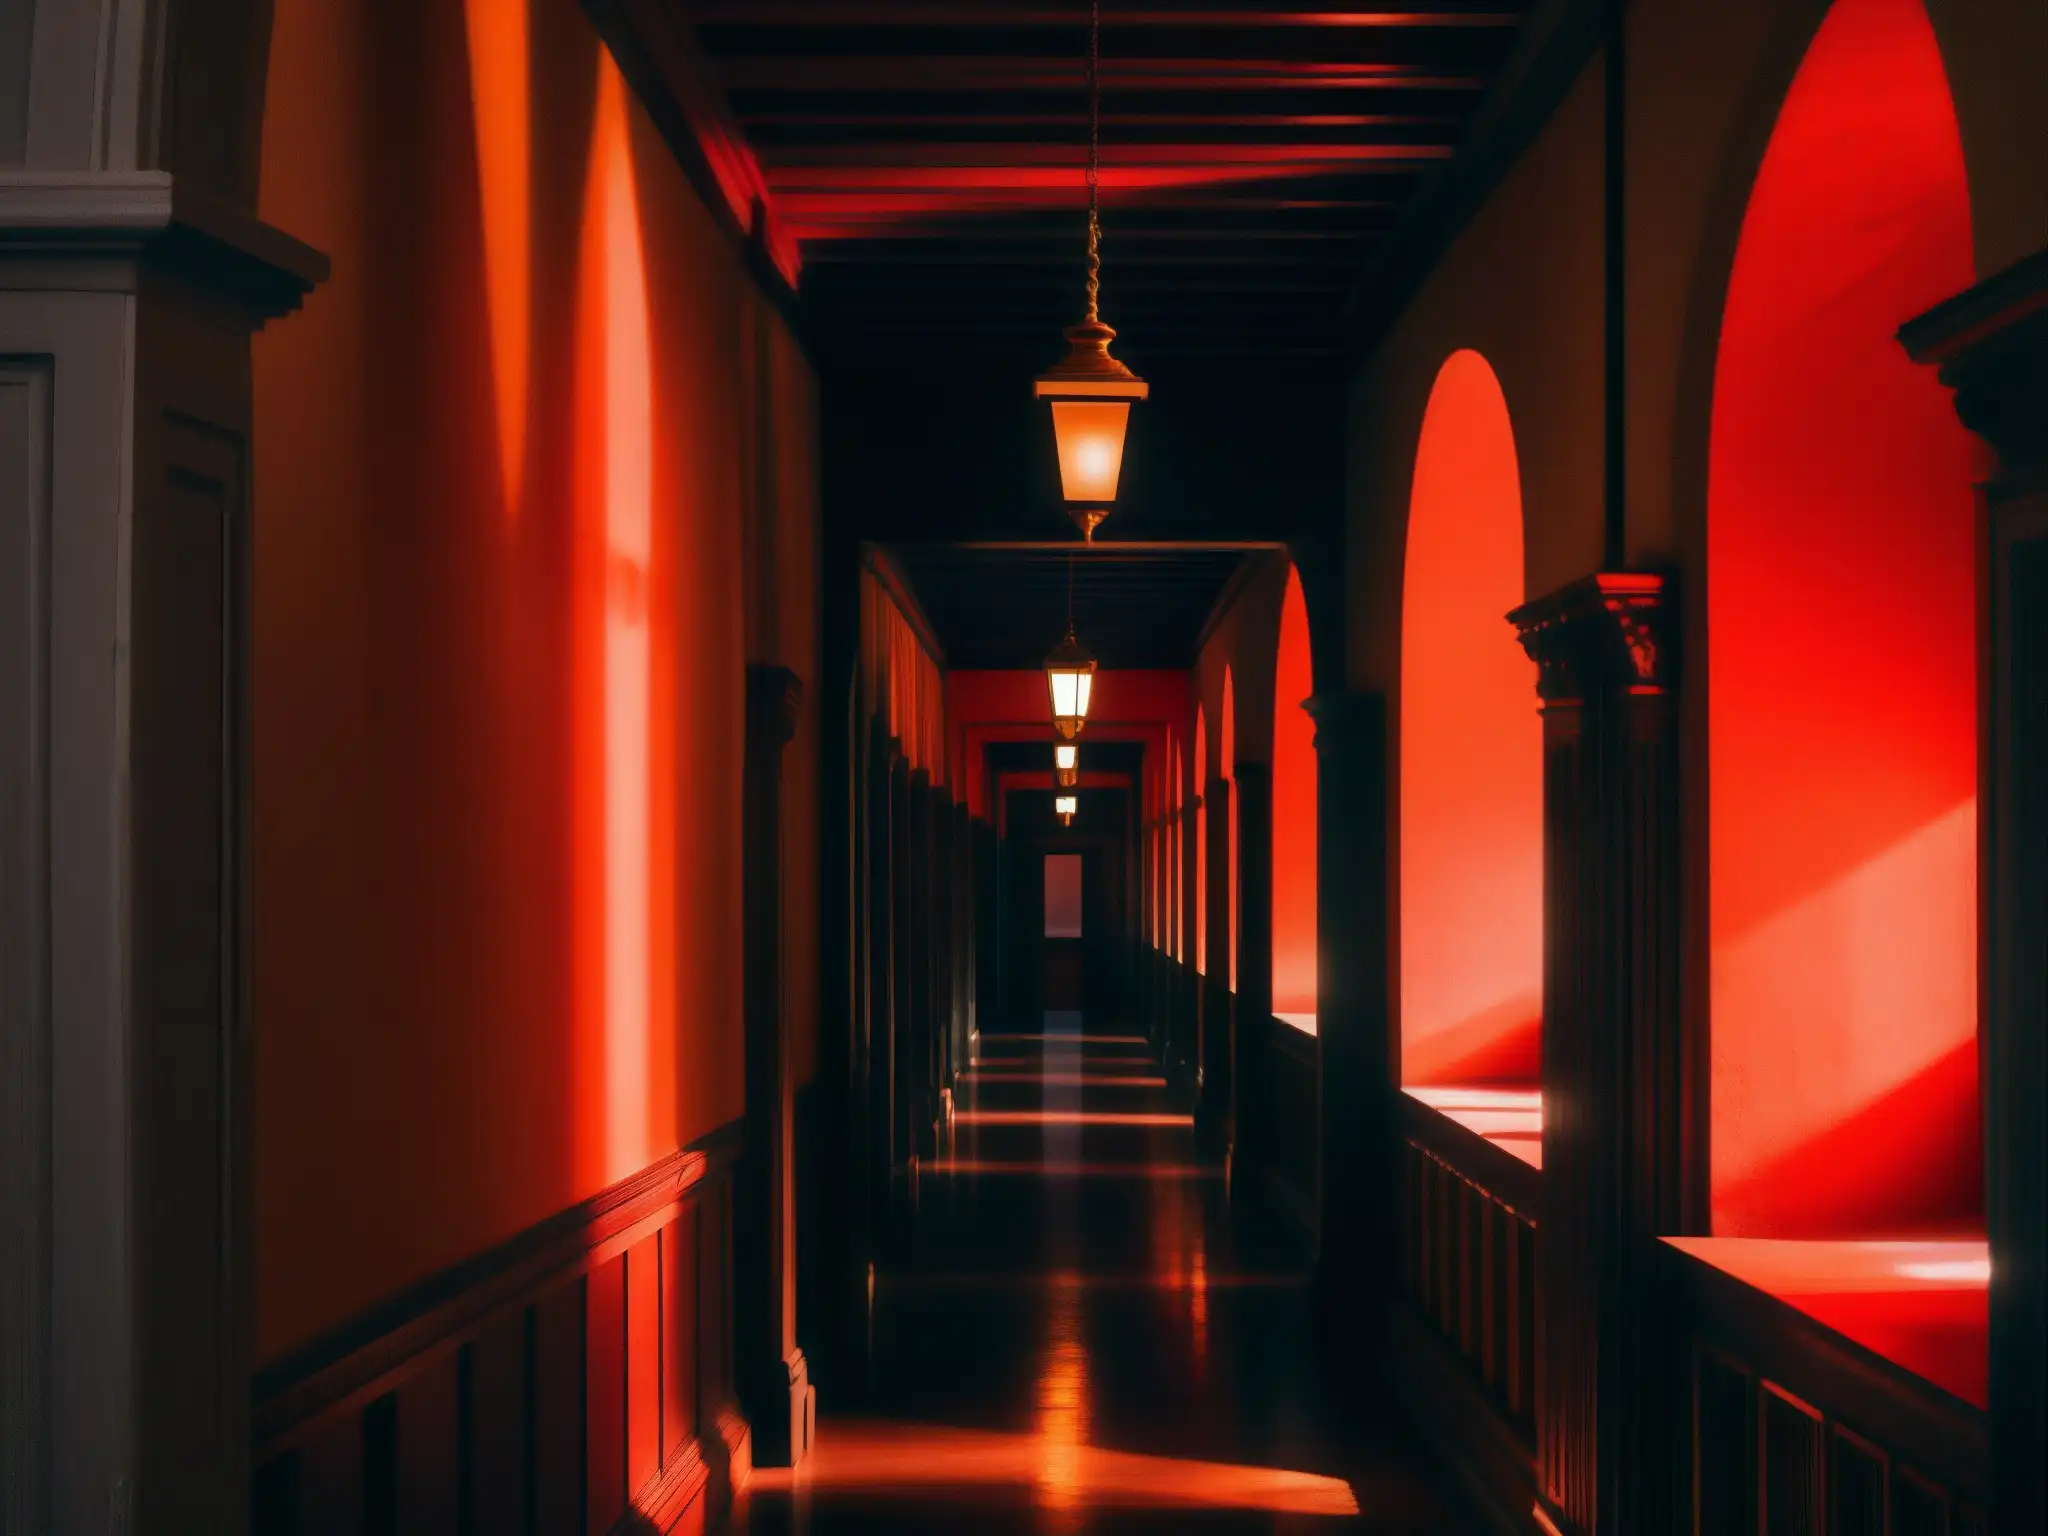 Corredores misteriosos del Palacio de San Francisco con un sutil resplandor rojo, evocando la leyenda de la Dama de Rojo en este histórico lugar